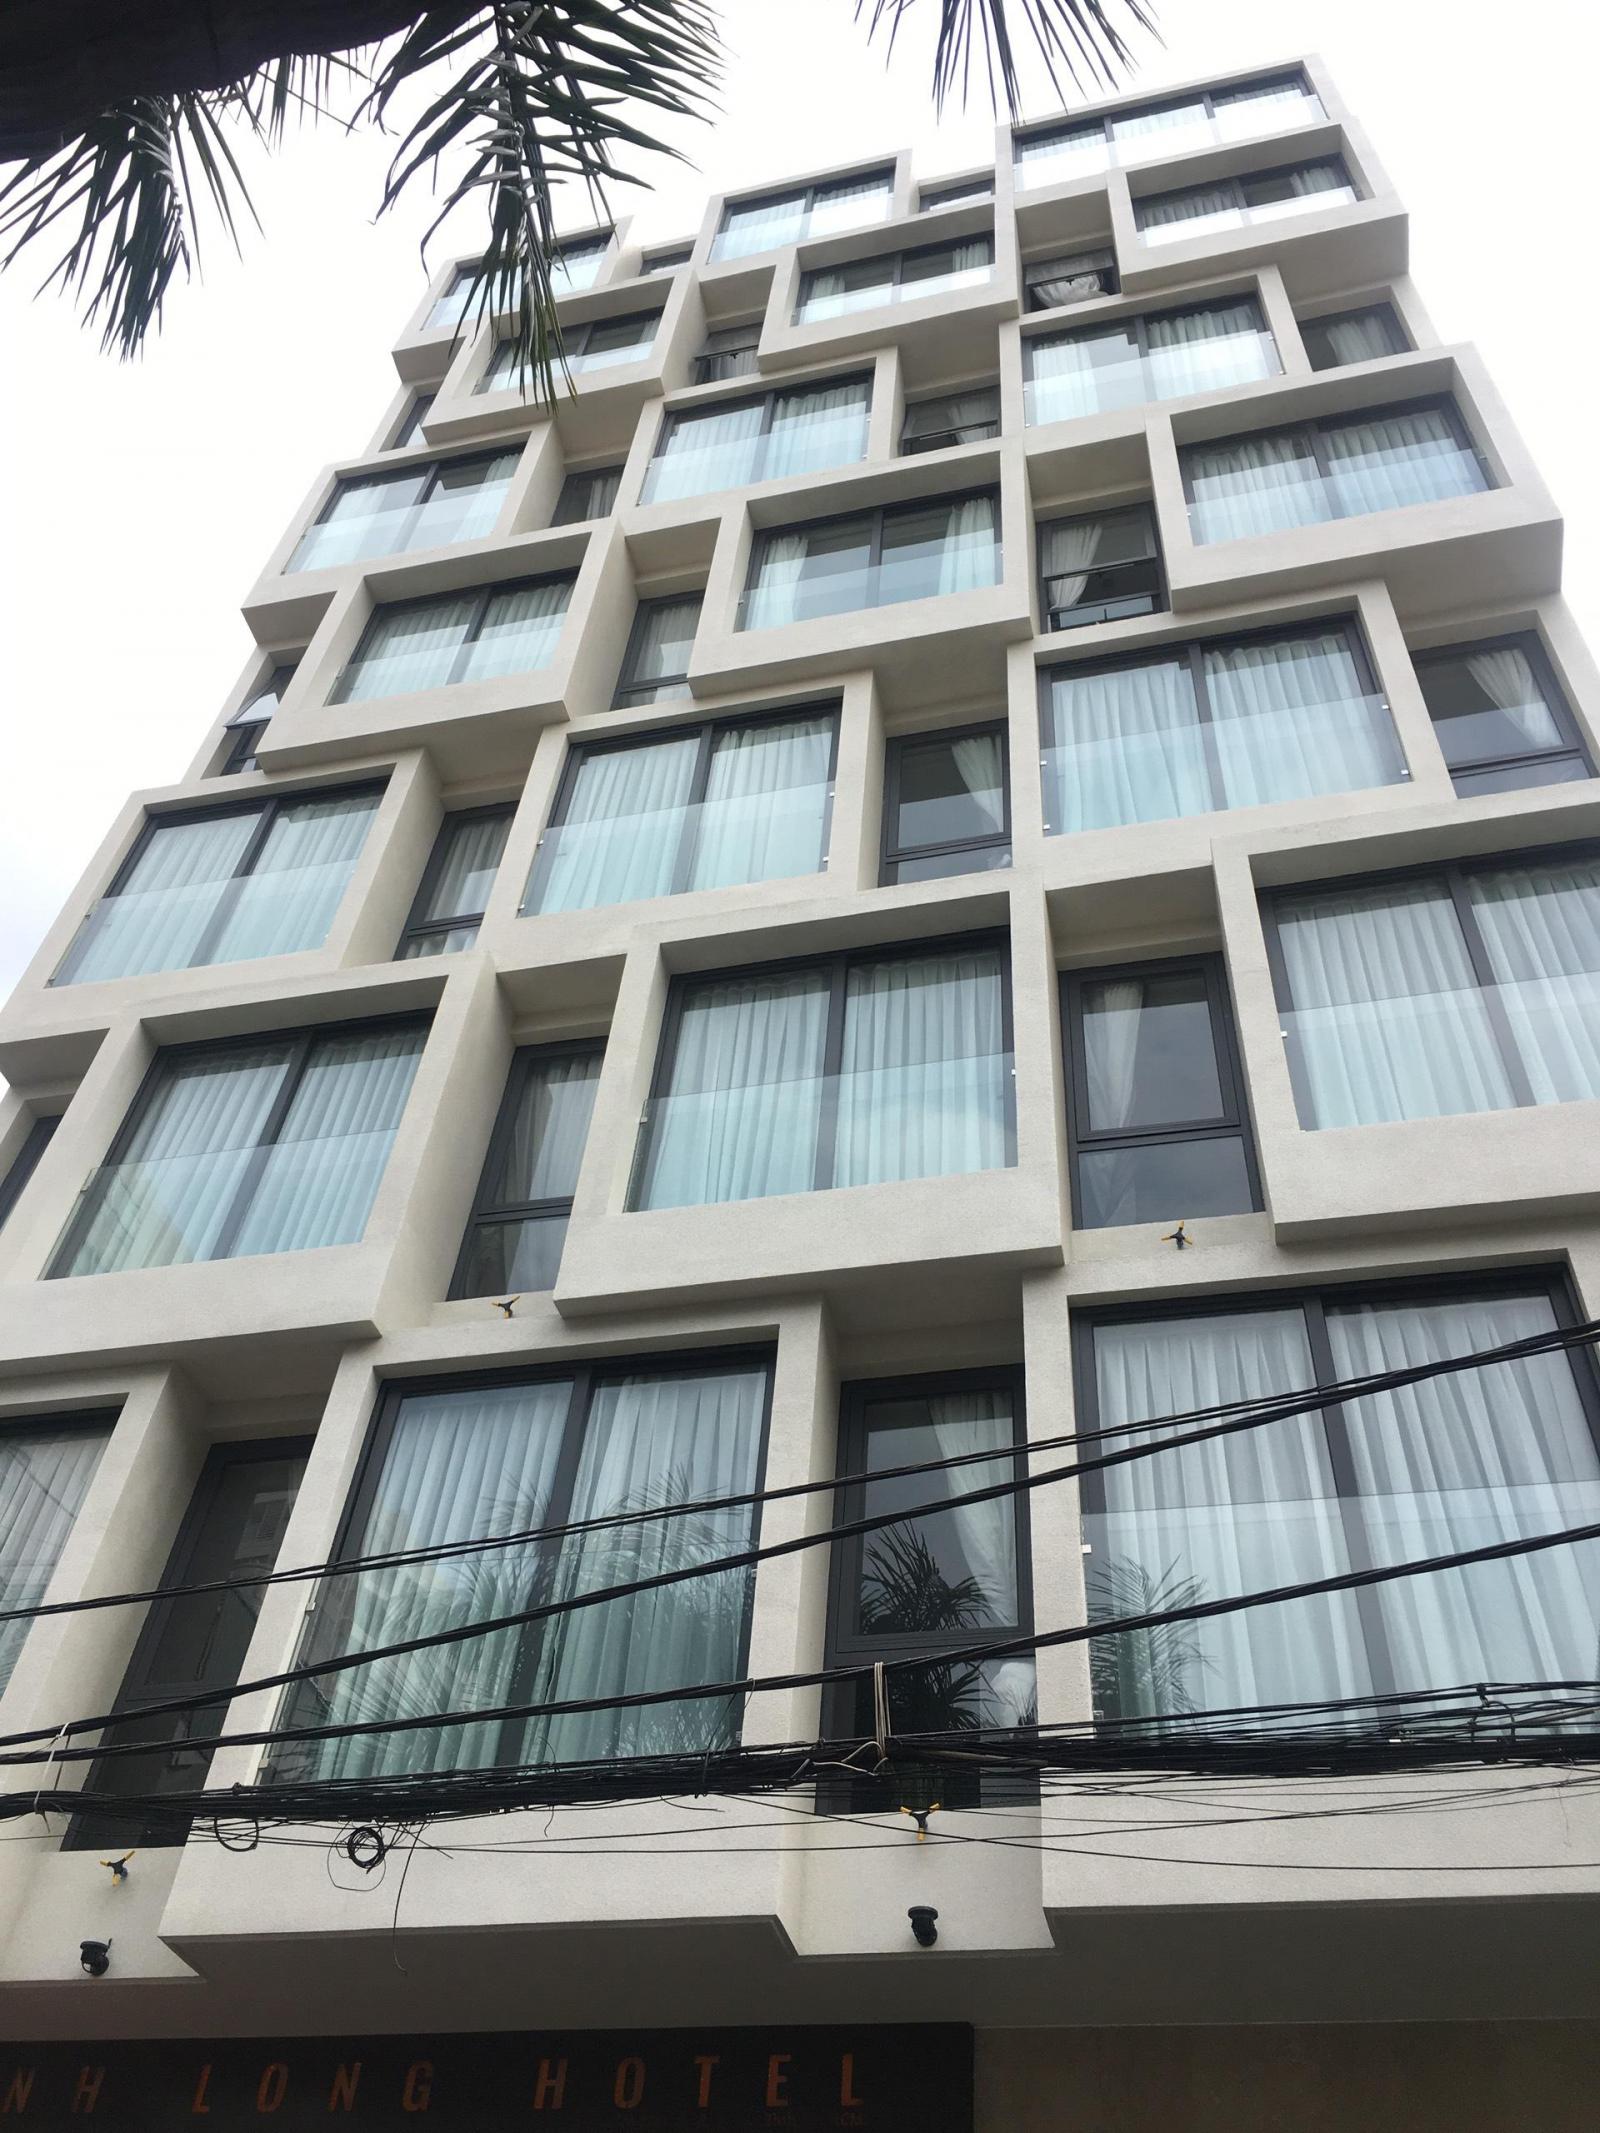 Bán gấp BUILDING 25 căn hộ dịch vụ cao cấp đường Hoàng Văn Thụ. Thu nhập gần 3 tỷ/năm